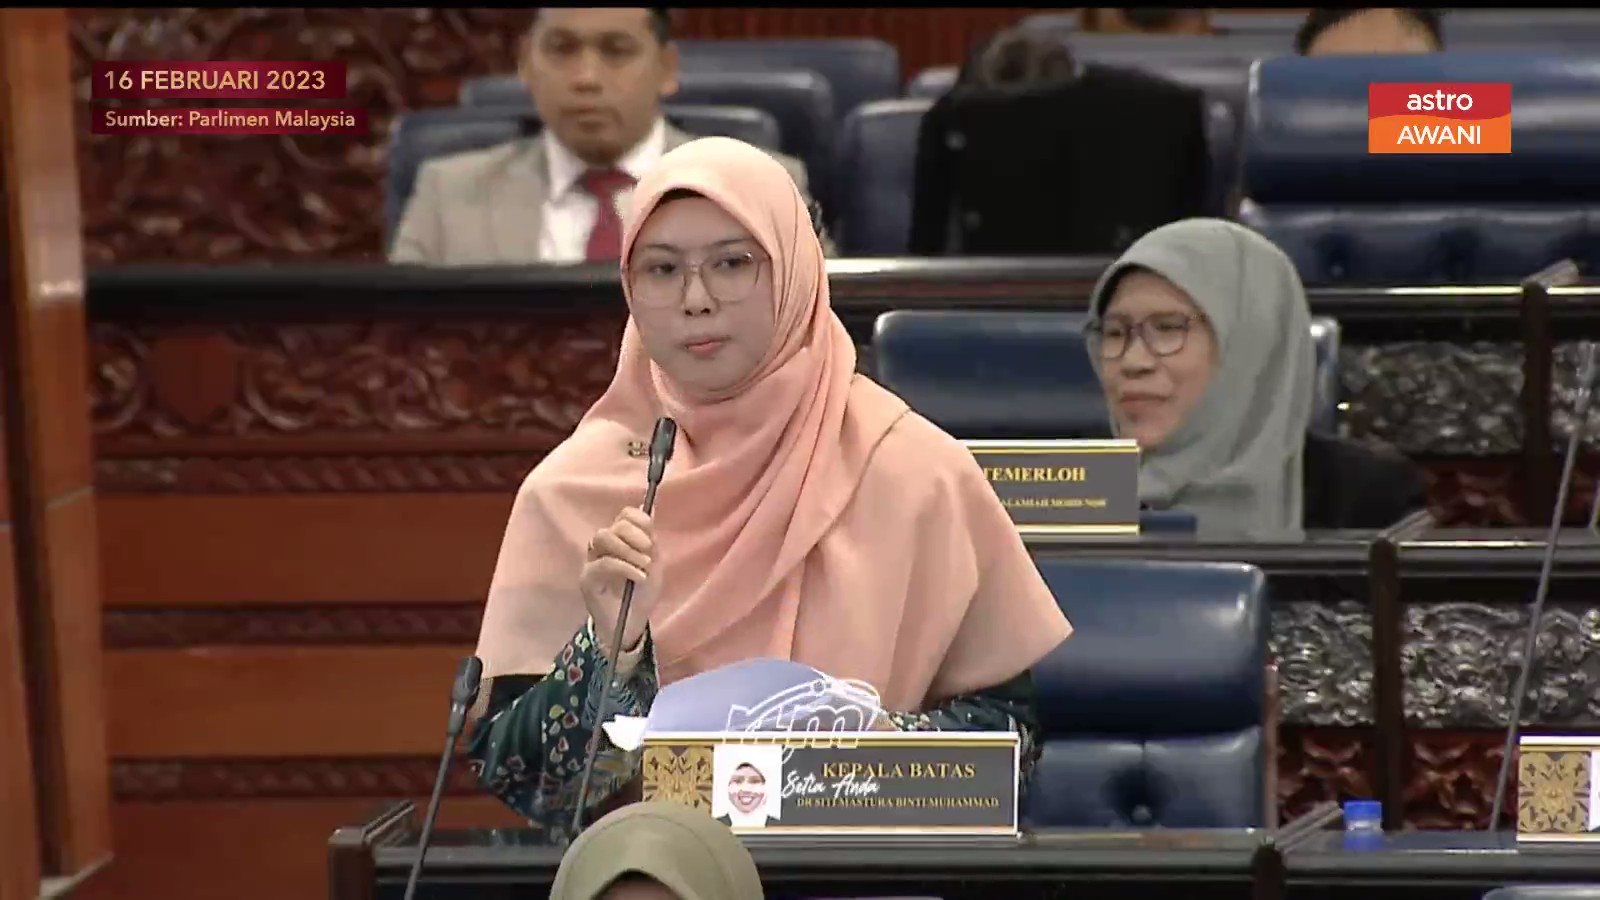 Astro AWANI on X: ""Panas takpe tapi jangan koyak," kata YB Kepala Batas, Siti Mastura Muhammad ketika YB Jelutong bangkitkan kenyataan yang mengelirukan Dewan Rakyat. RSN Rayer kemudian menjawab "Yang koyak siapa